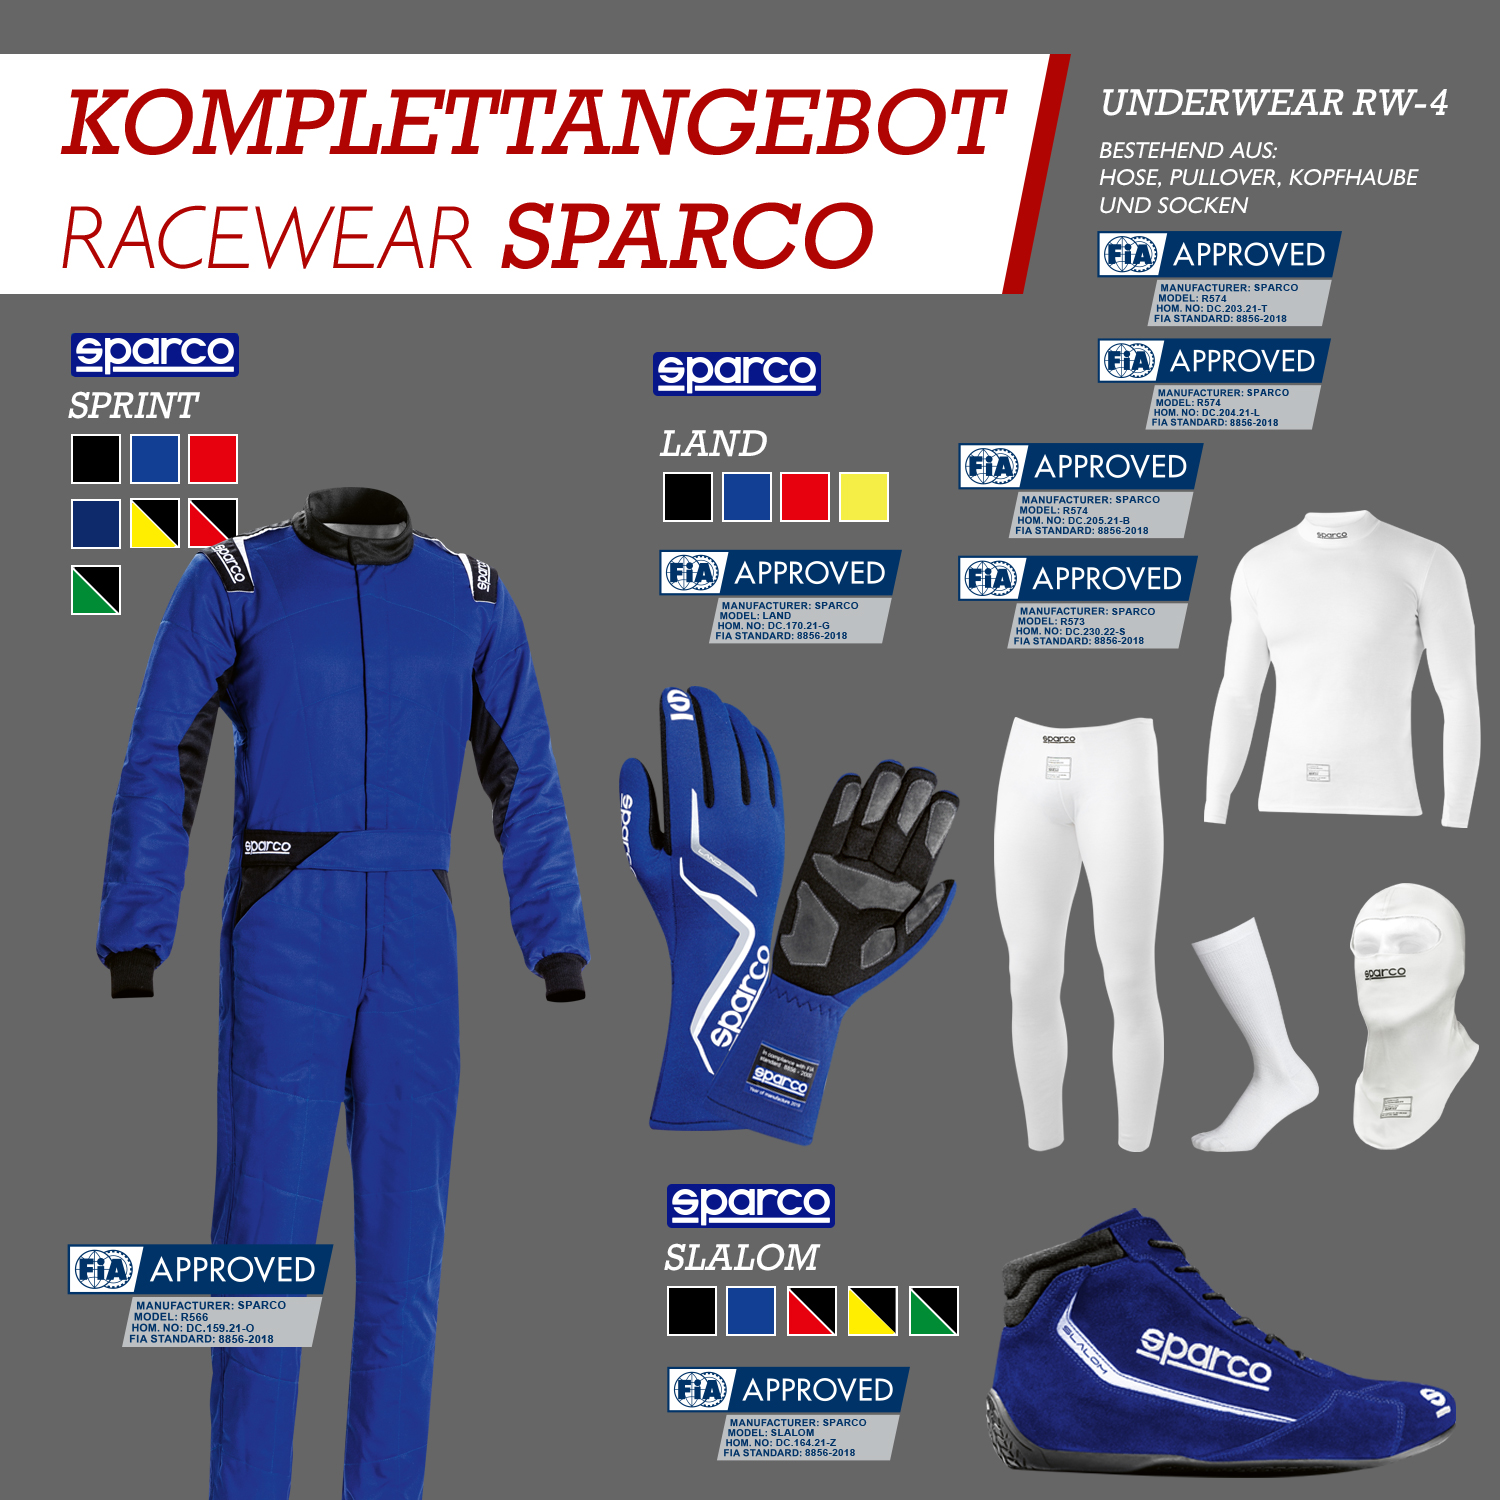 Komplettangebot Racewear | Sparco